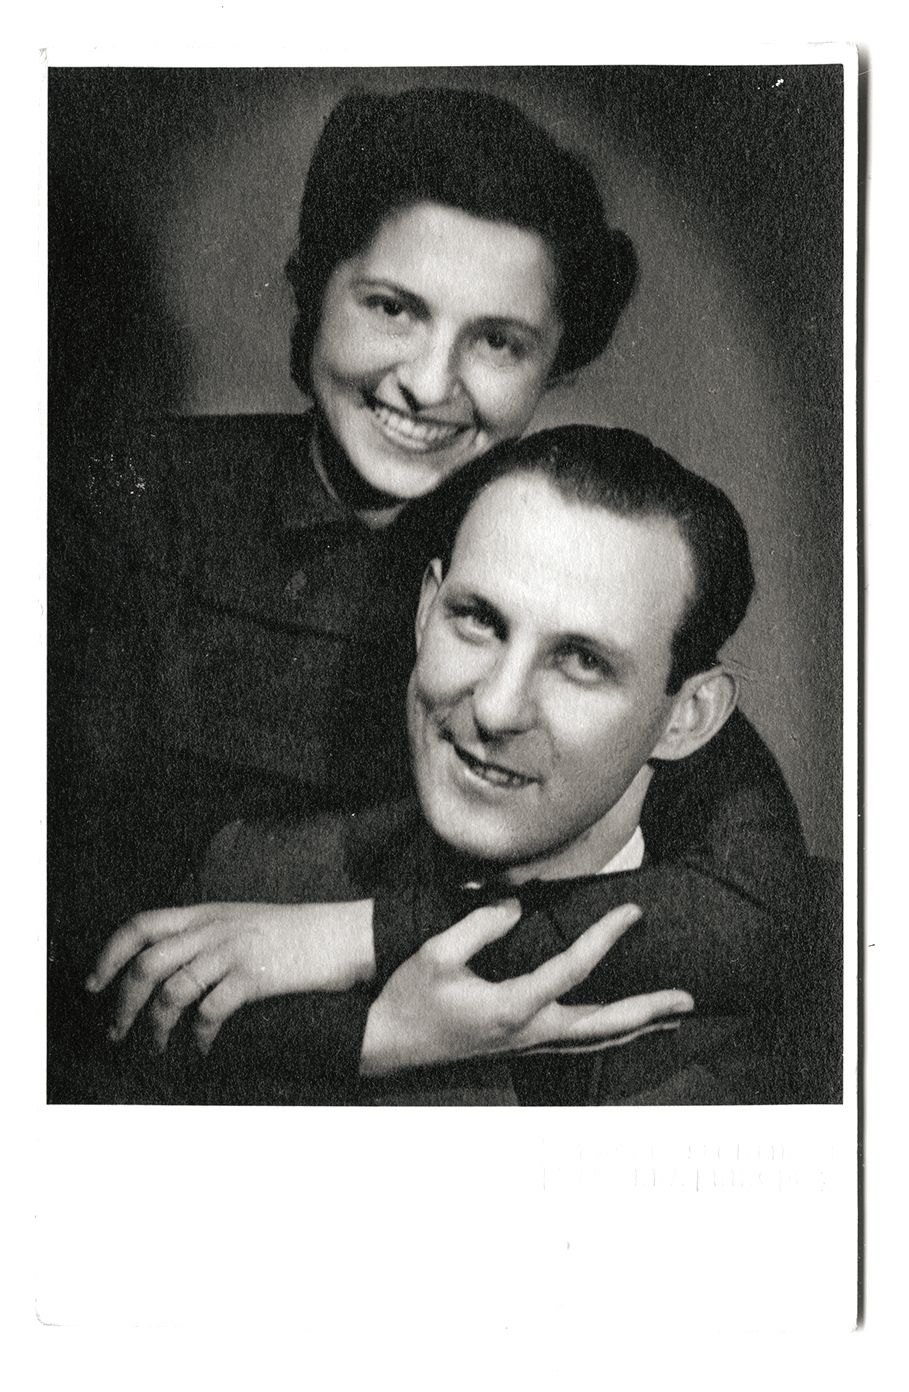 Snoubenci krátce před svatbou (1939).